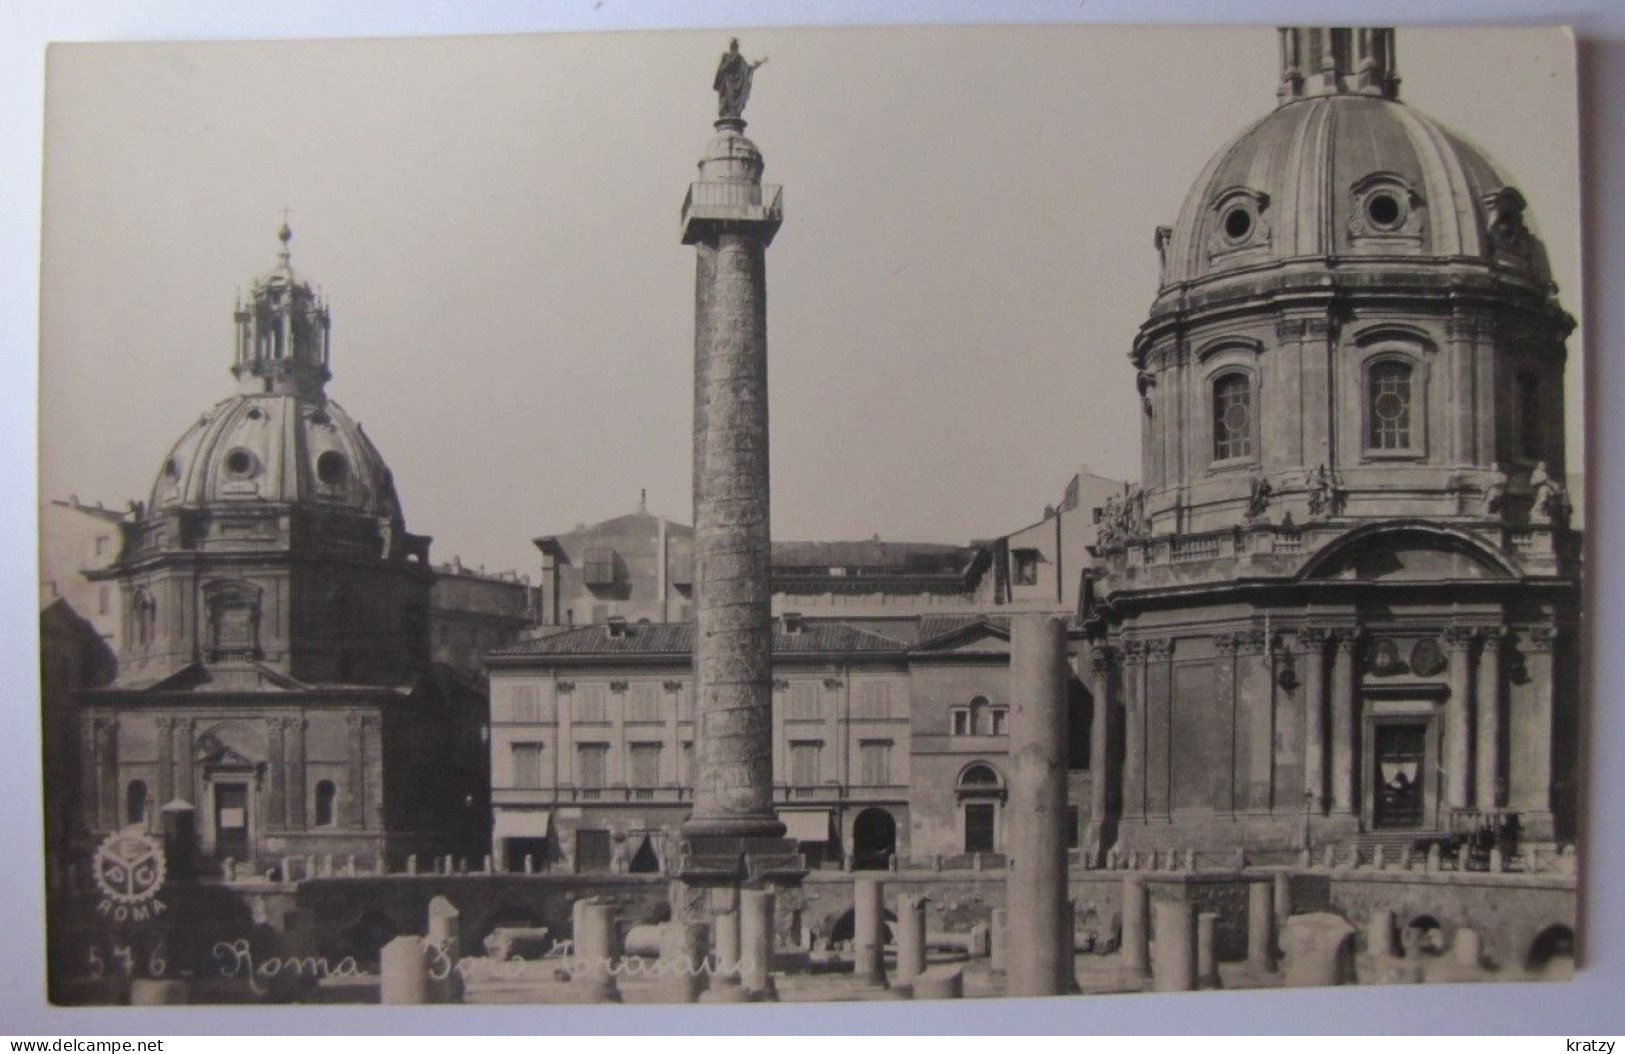 ITALIE - LAZIO - ROMA - Foro Romano - Andere Monumente & Gebäude